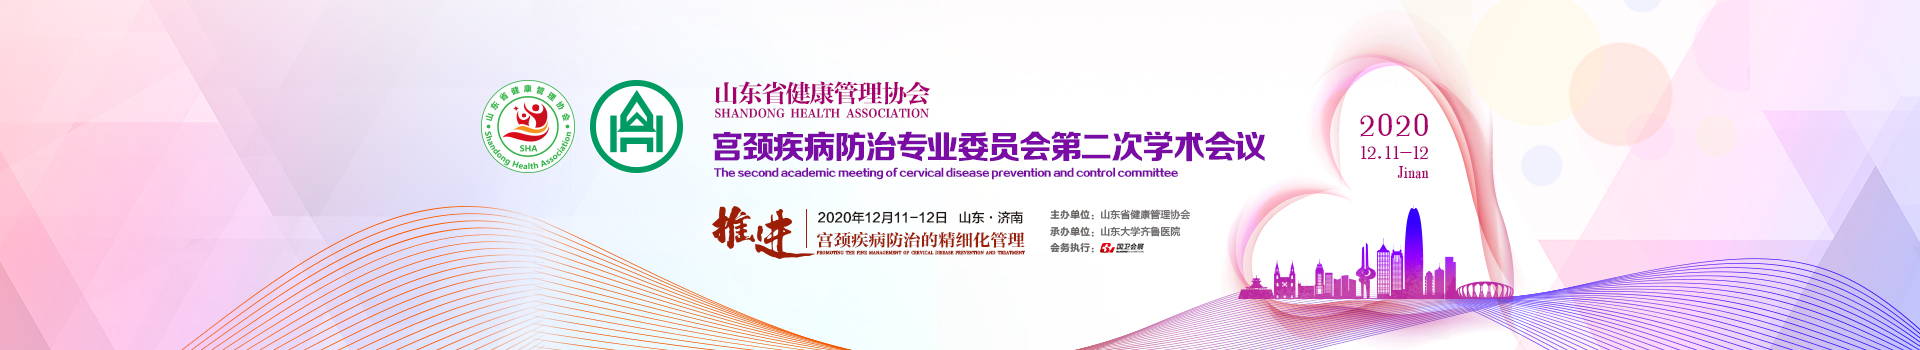 山东省健康管理协会宫颈疾病防治专业委员会第二次学术会议